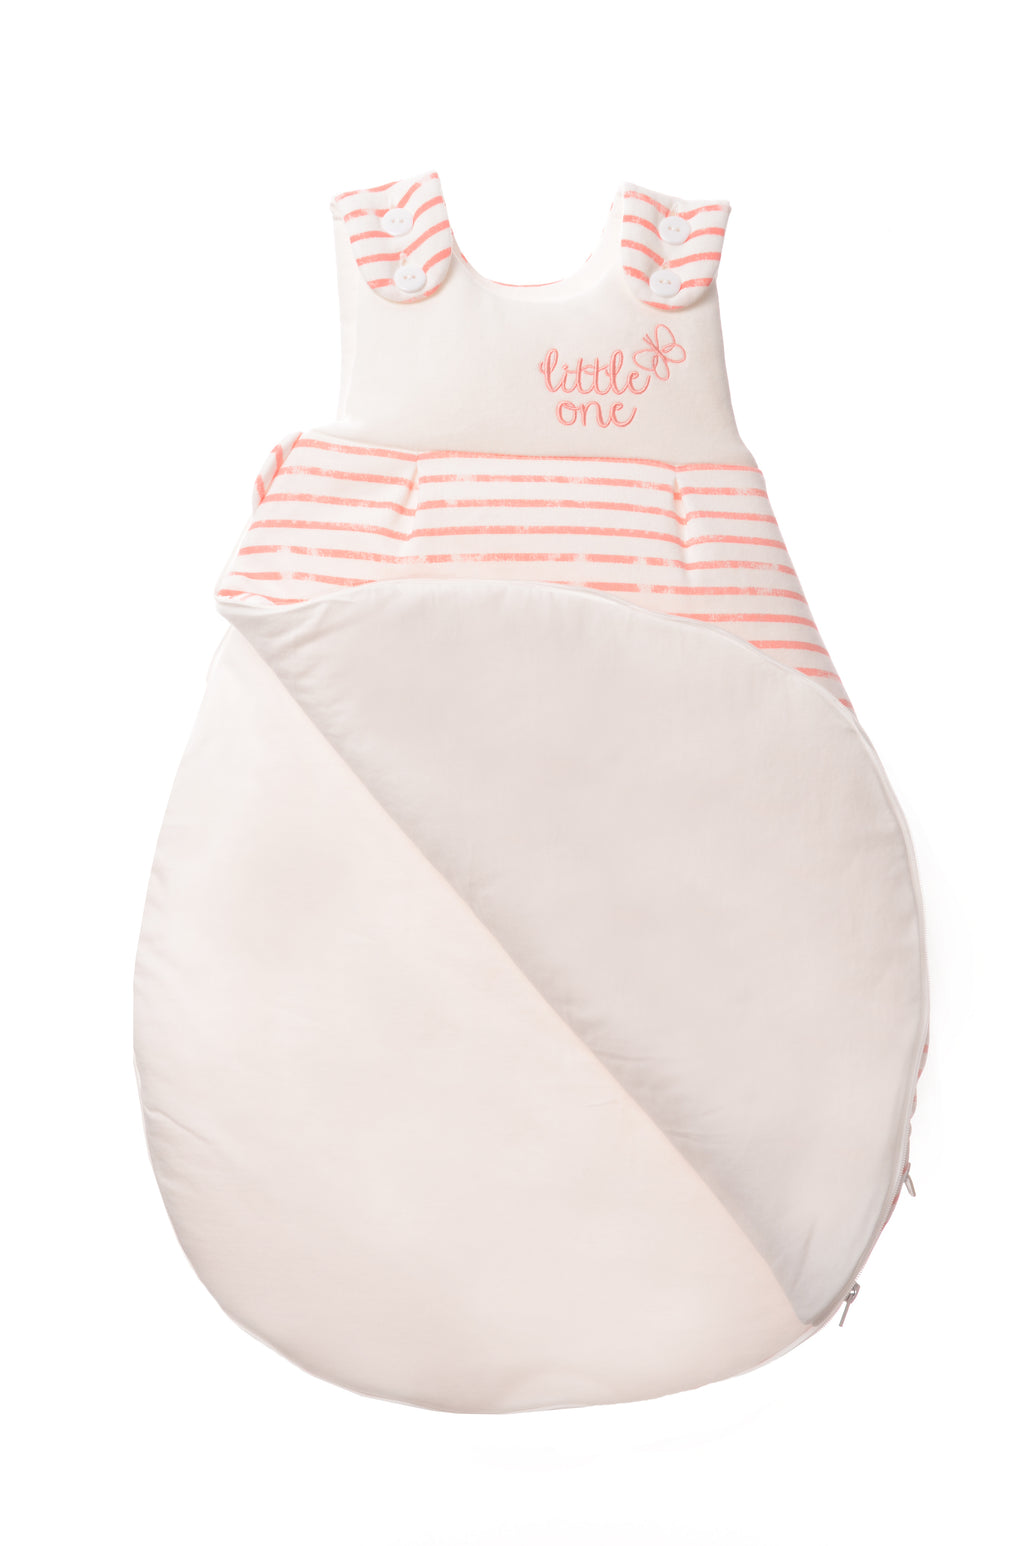 Schlafsack für Babys in unterschiedlichen Längen mit Knöpfen und Reißverschluss an der Seite. Design:  Streifen in koralle mit Stickerei little one.